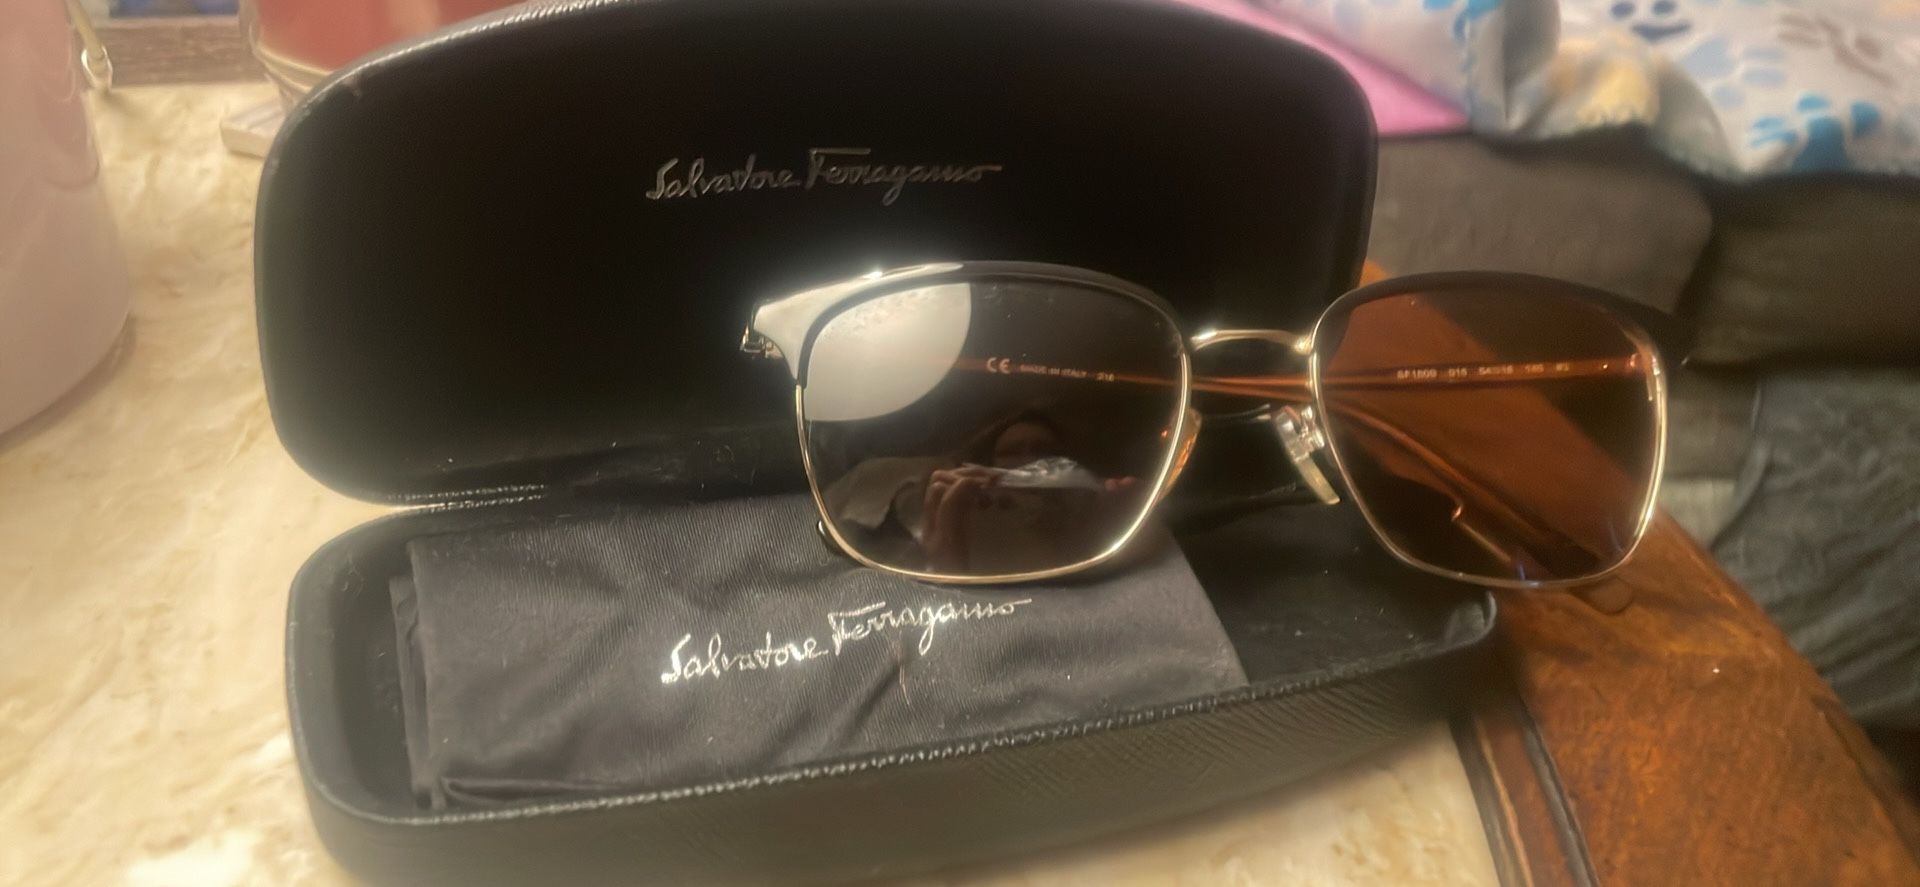 NEW— Salvatore Ferragamo Sunglasses with accessories